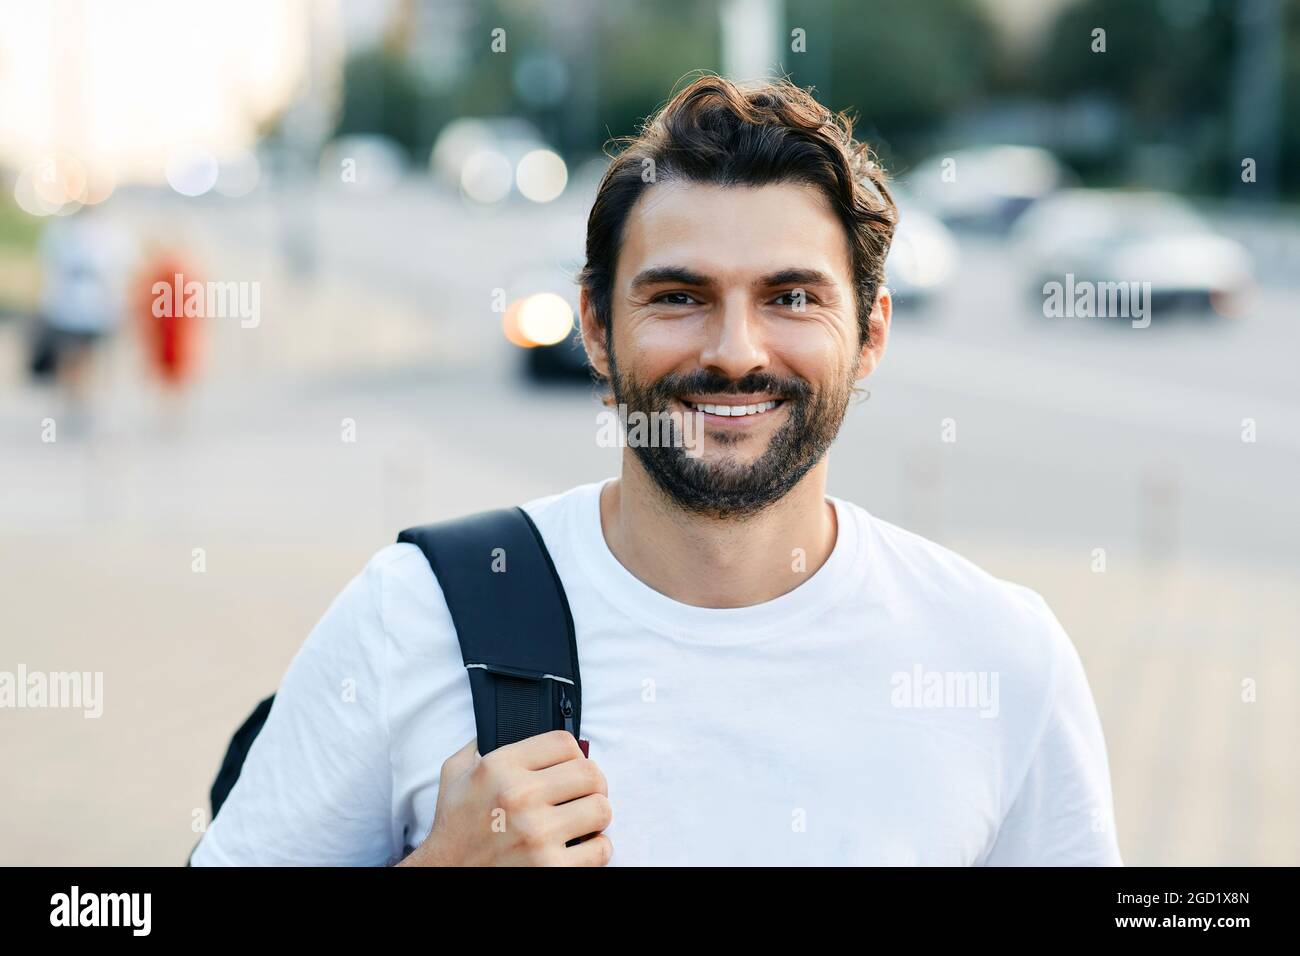 Ritratto di un bell'uomo con un sorriso bianco su una strada cittadina che tiene uno zaino Foto Stock